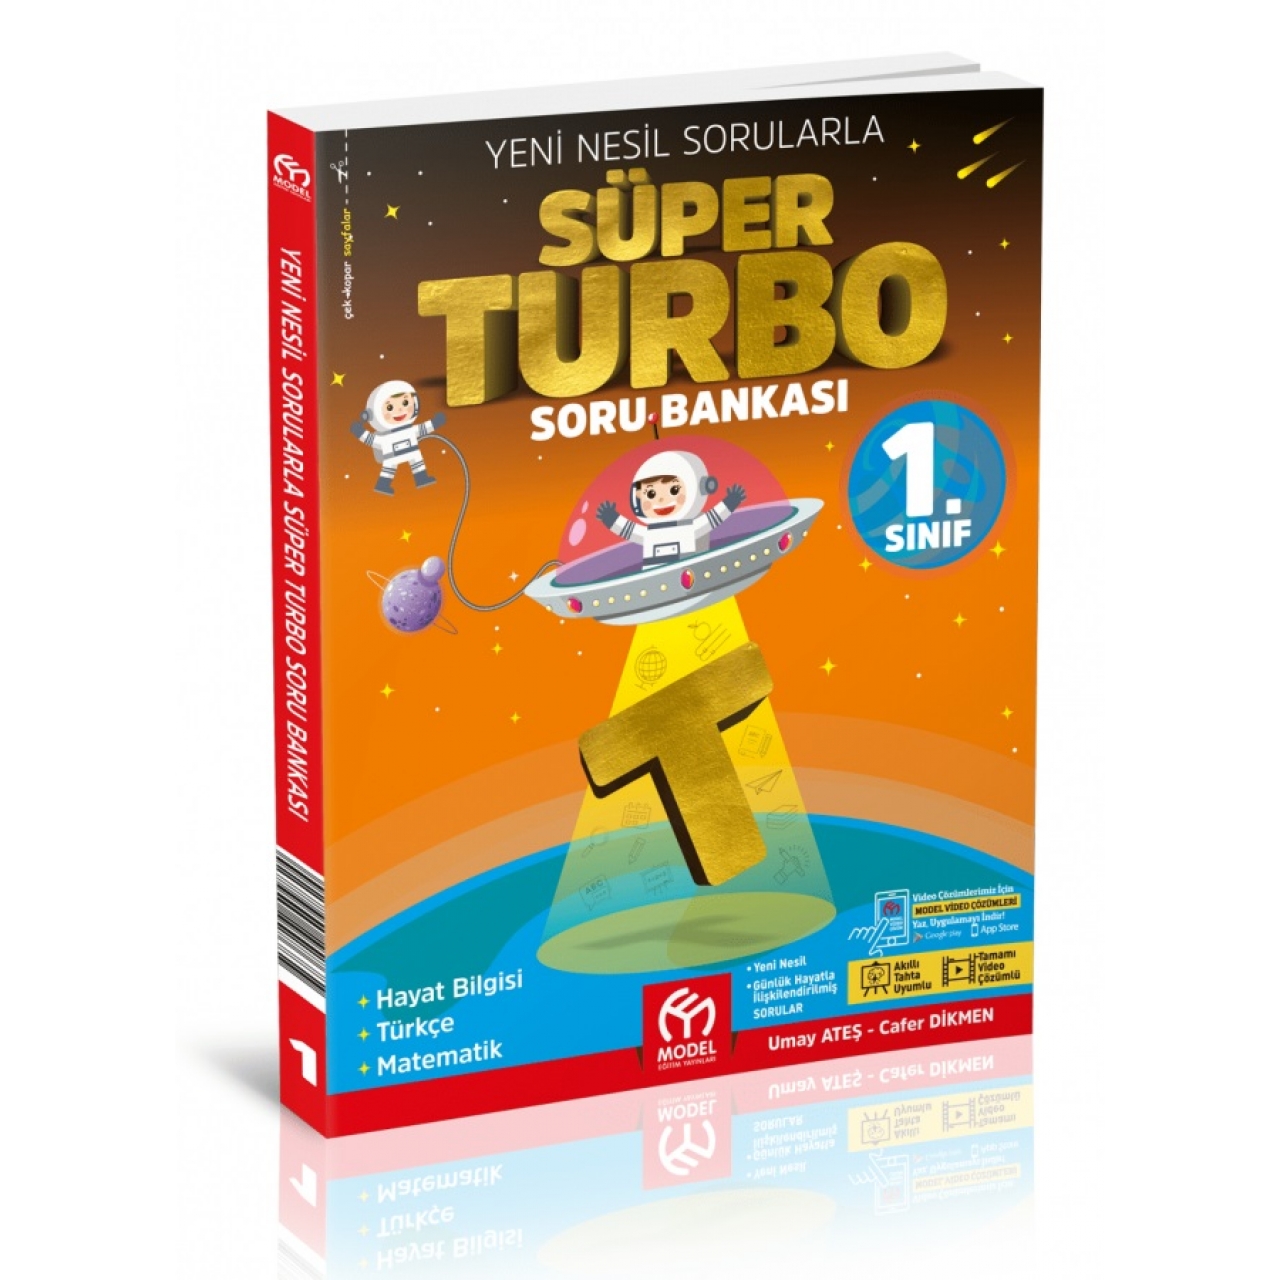 1. Sınıf Süper Turbo Yeni Nesil Soru Bankası Model Eğitim